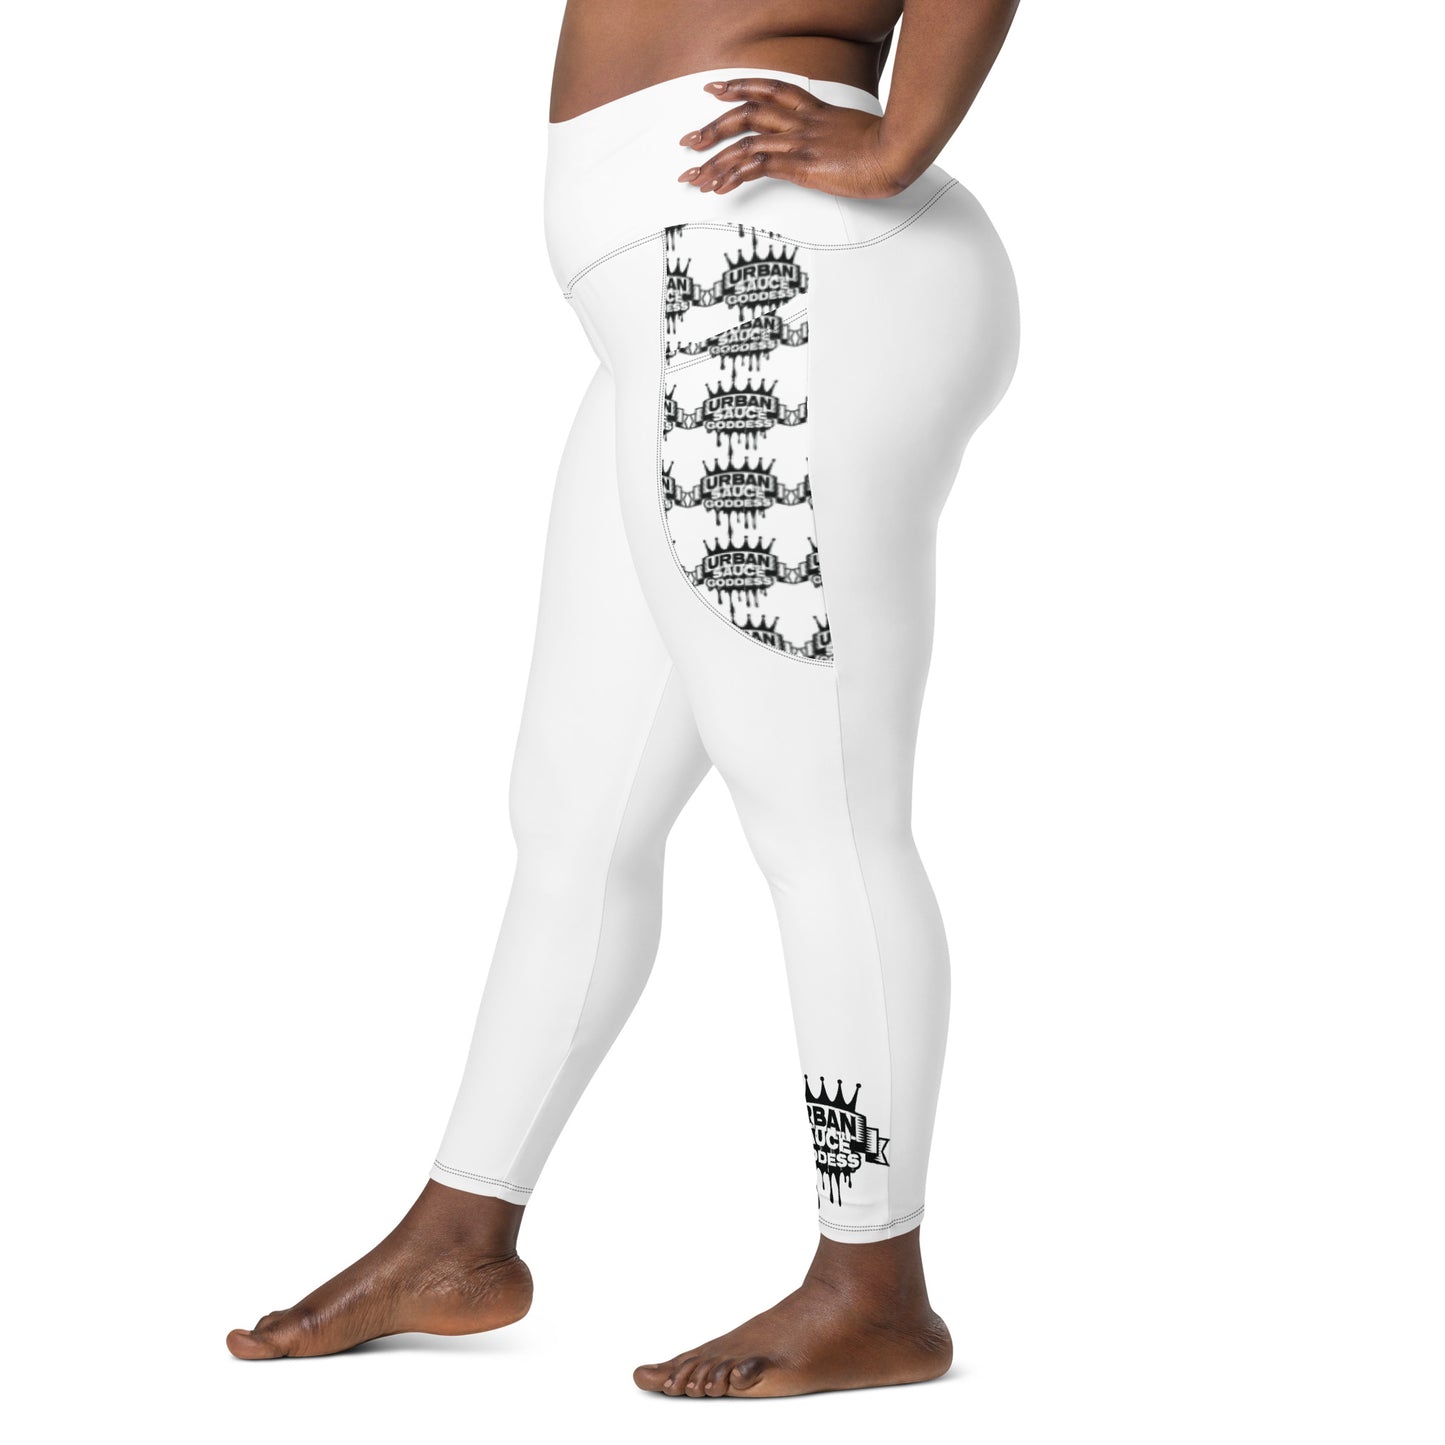 Sauce Goddess White Leggings with black logo pockets